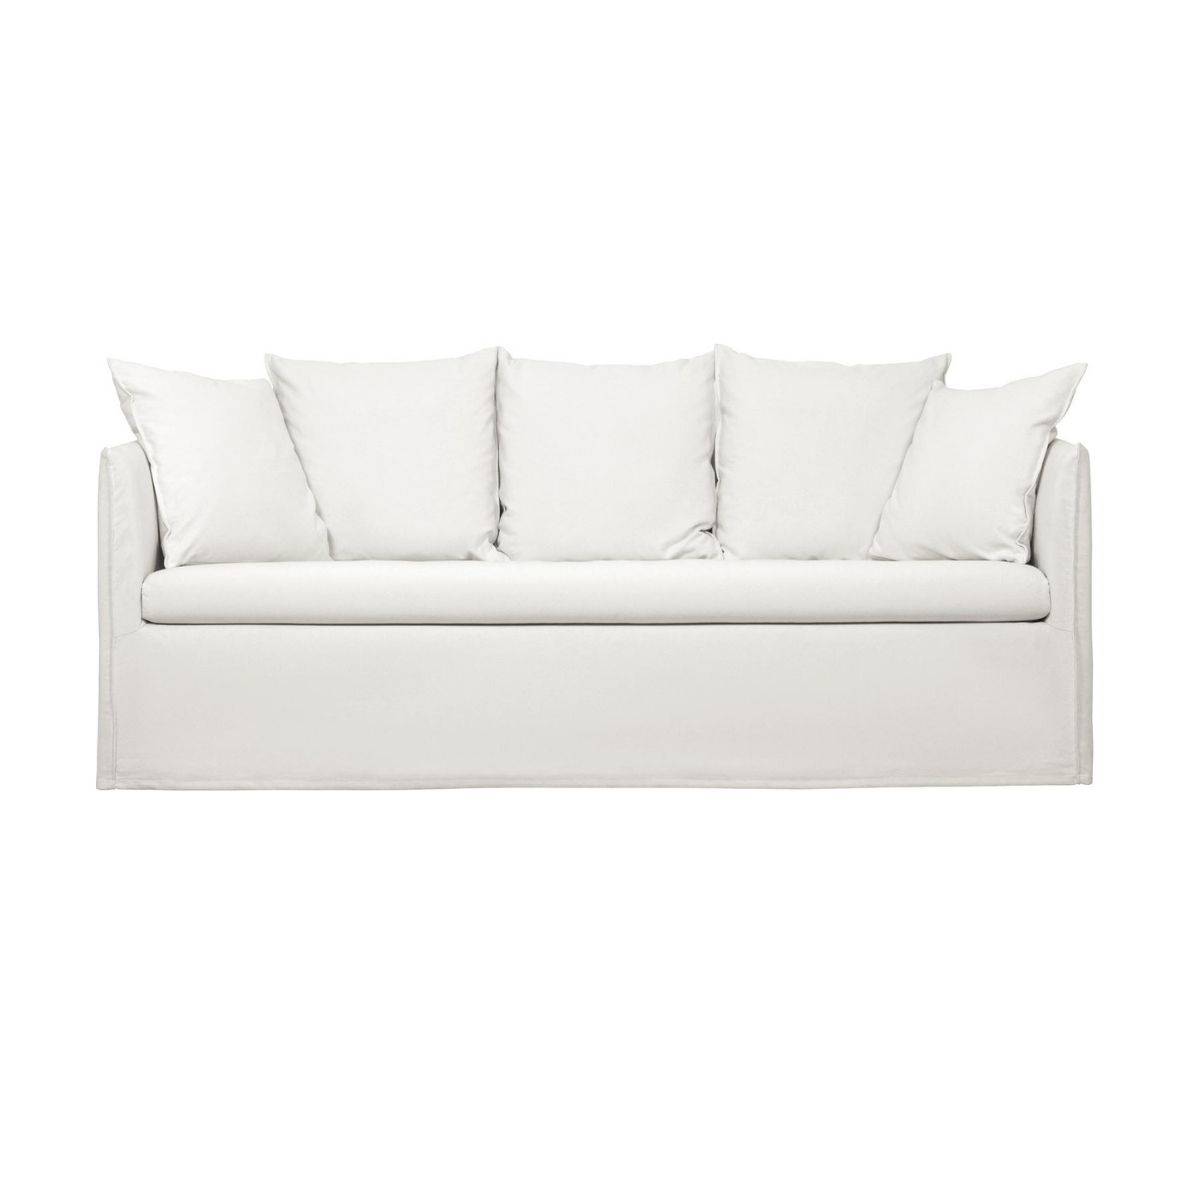 sofa-blanco-mila-plazas-westwingnow